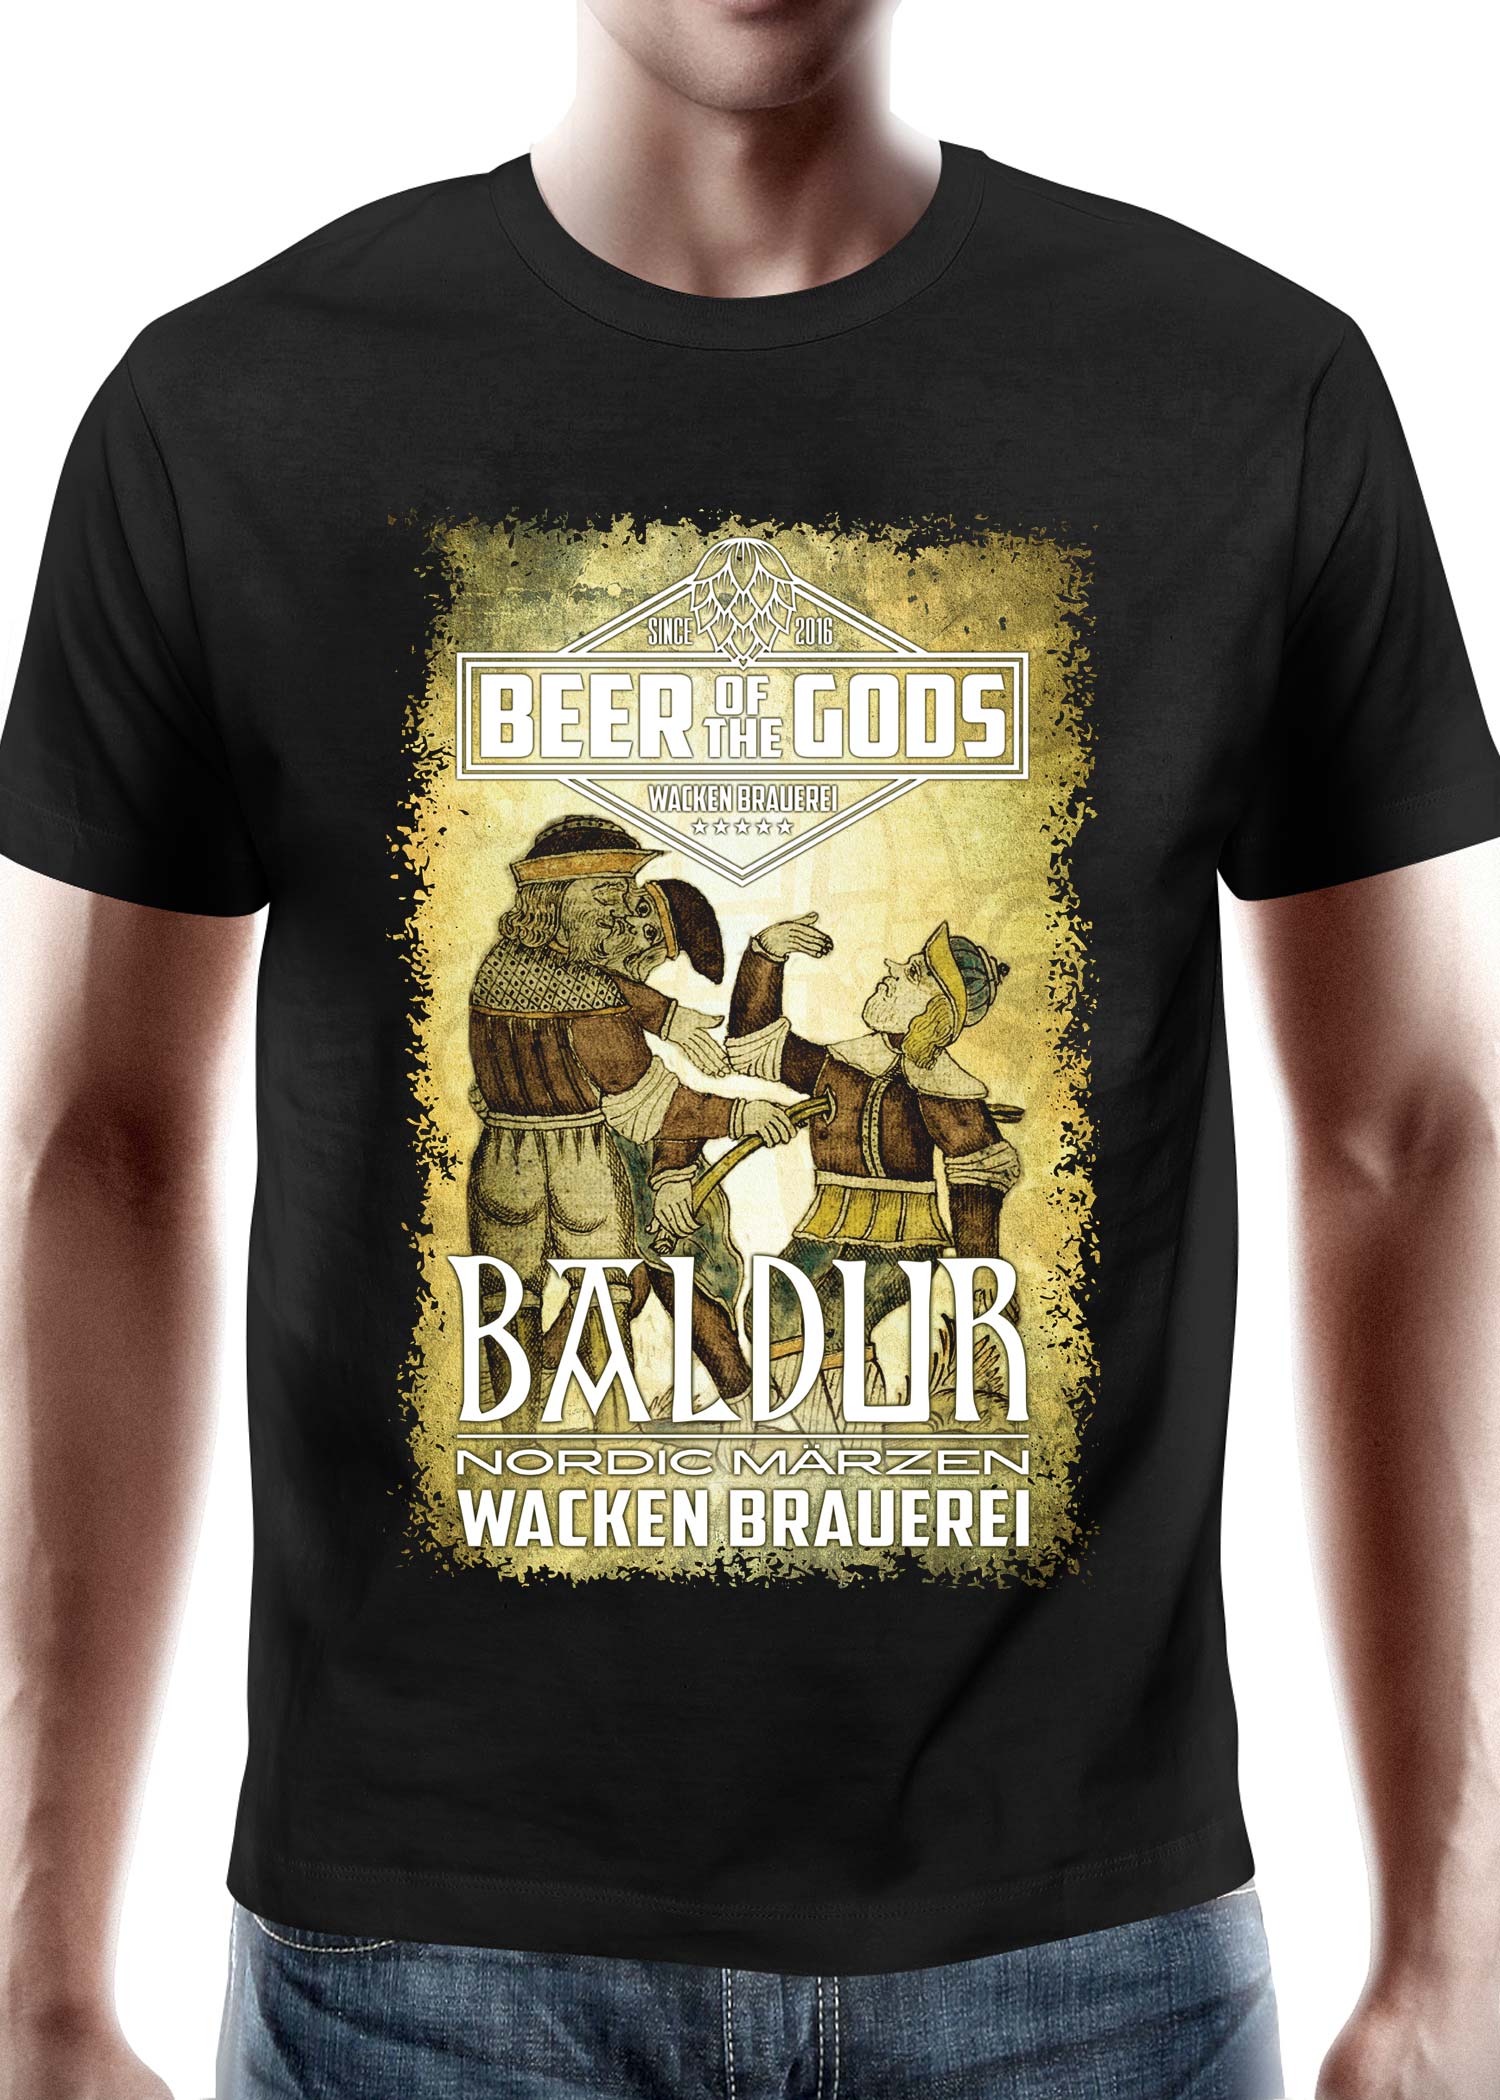 Baldur - Wacken Brauerei, T-Shirt, Größe 3XL